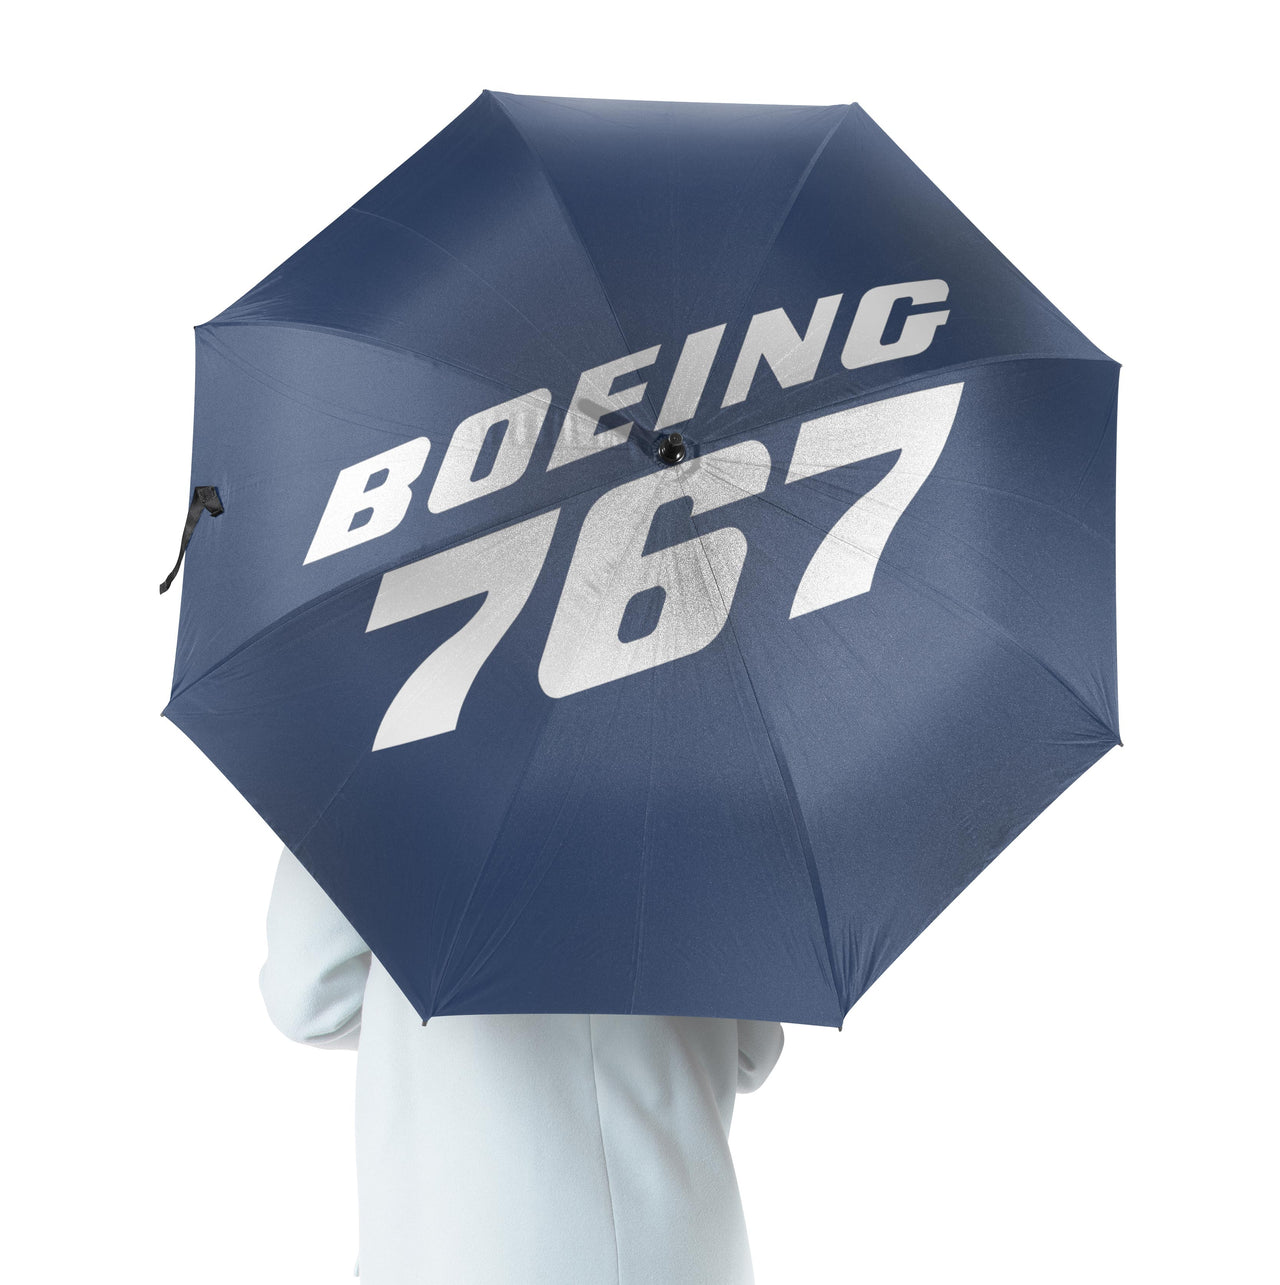 Boeing 767 & Text Designed Umbrella